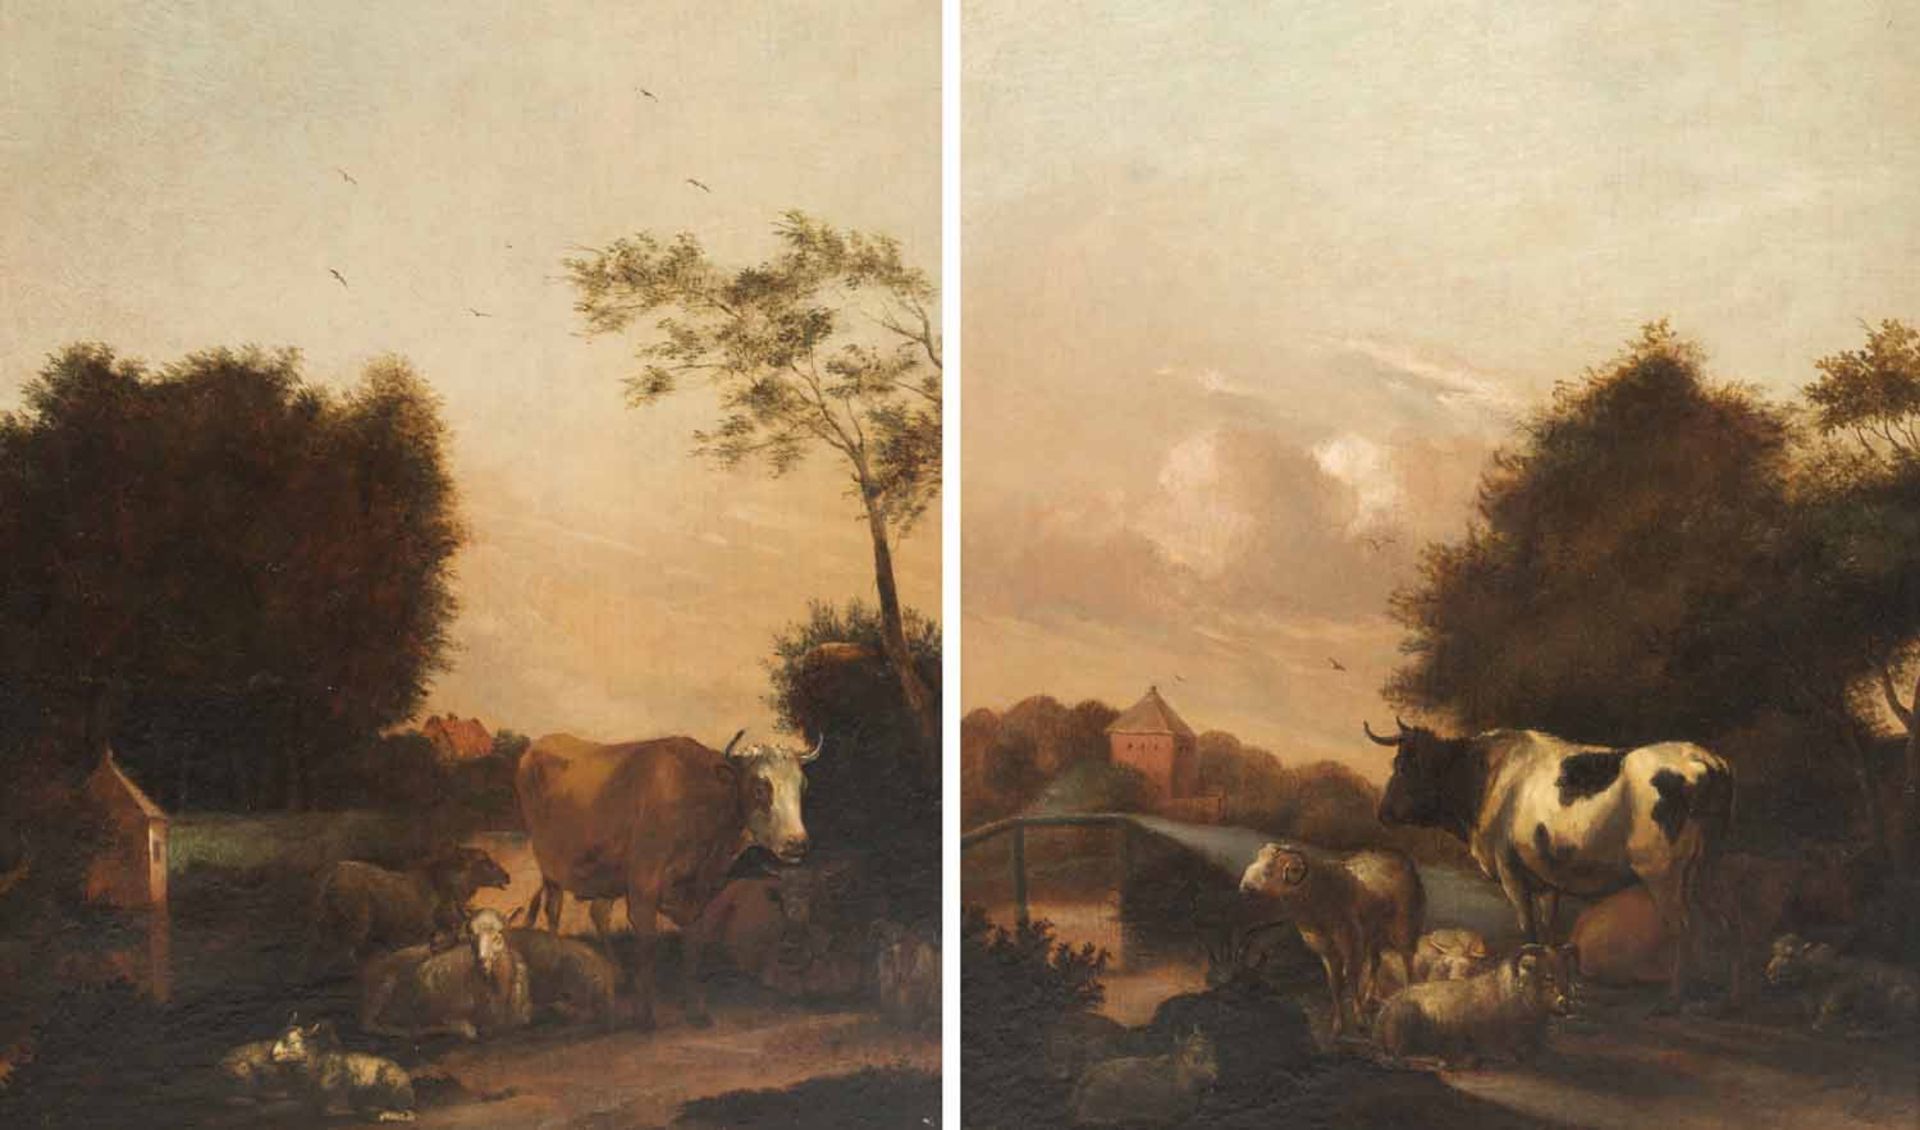 Klomp, Albert Jansz.Amsterdam 1618 - 168842 x 35 cmZwei abendliche Landschaften mit Tierherde.